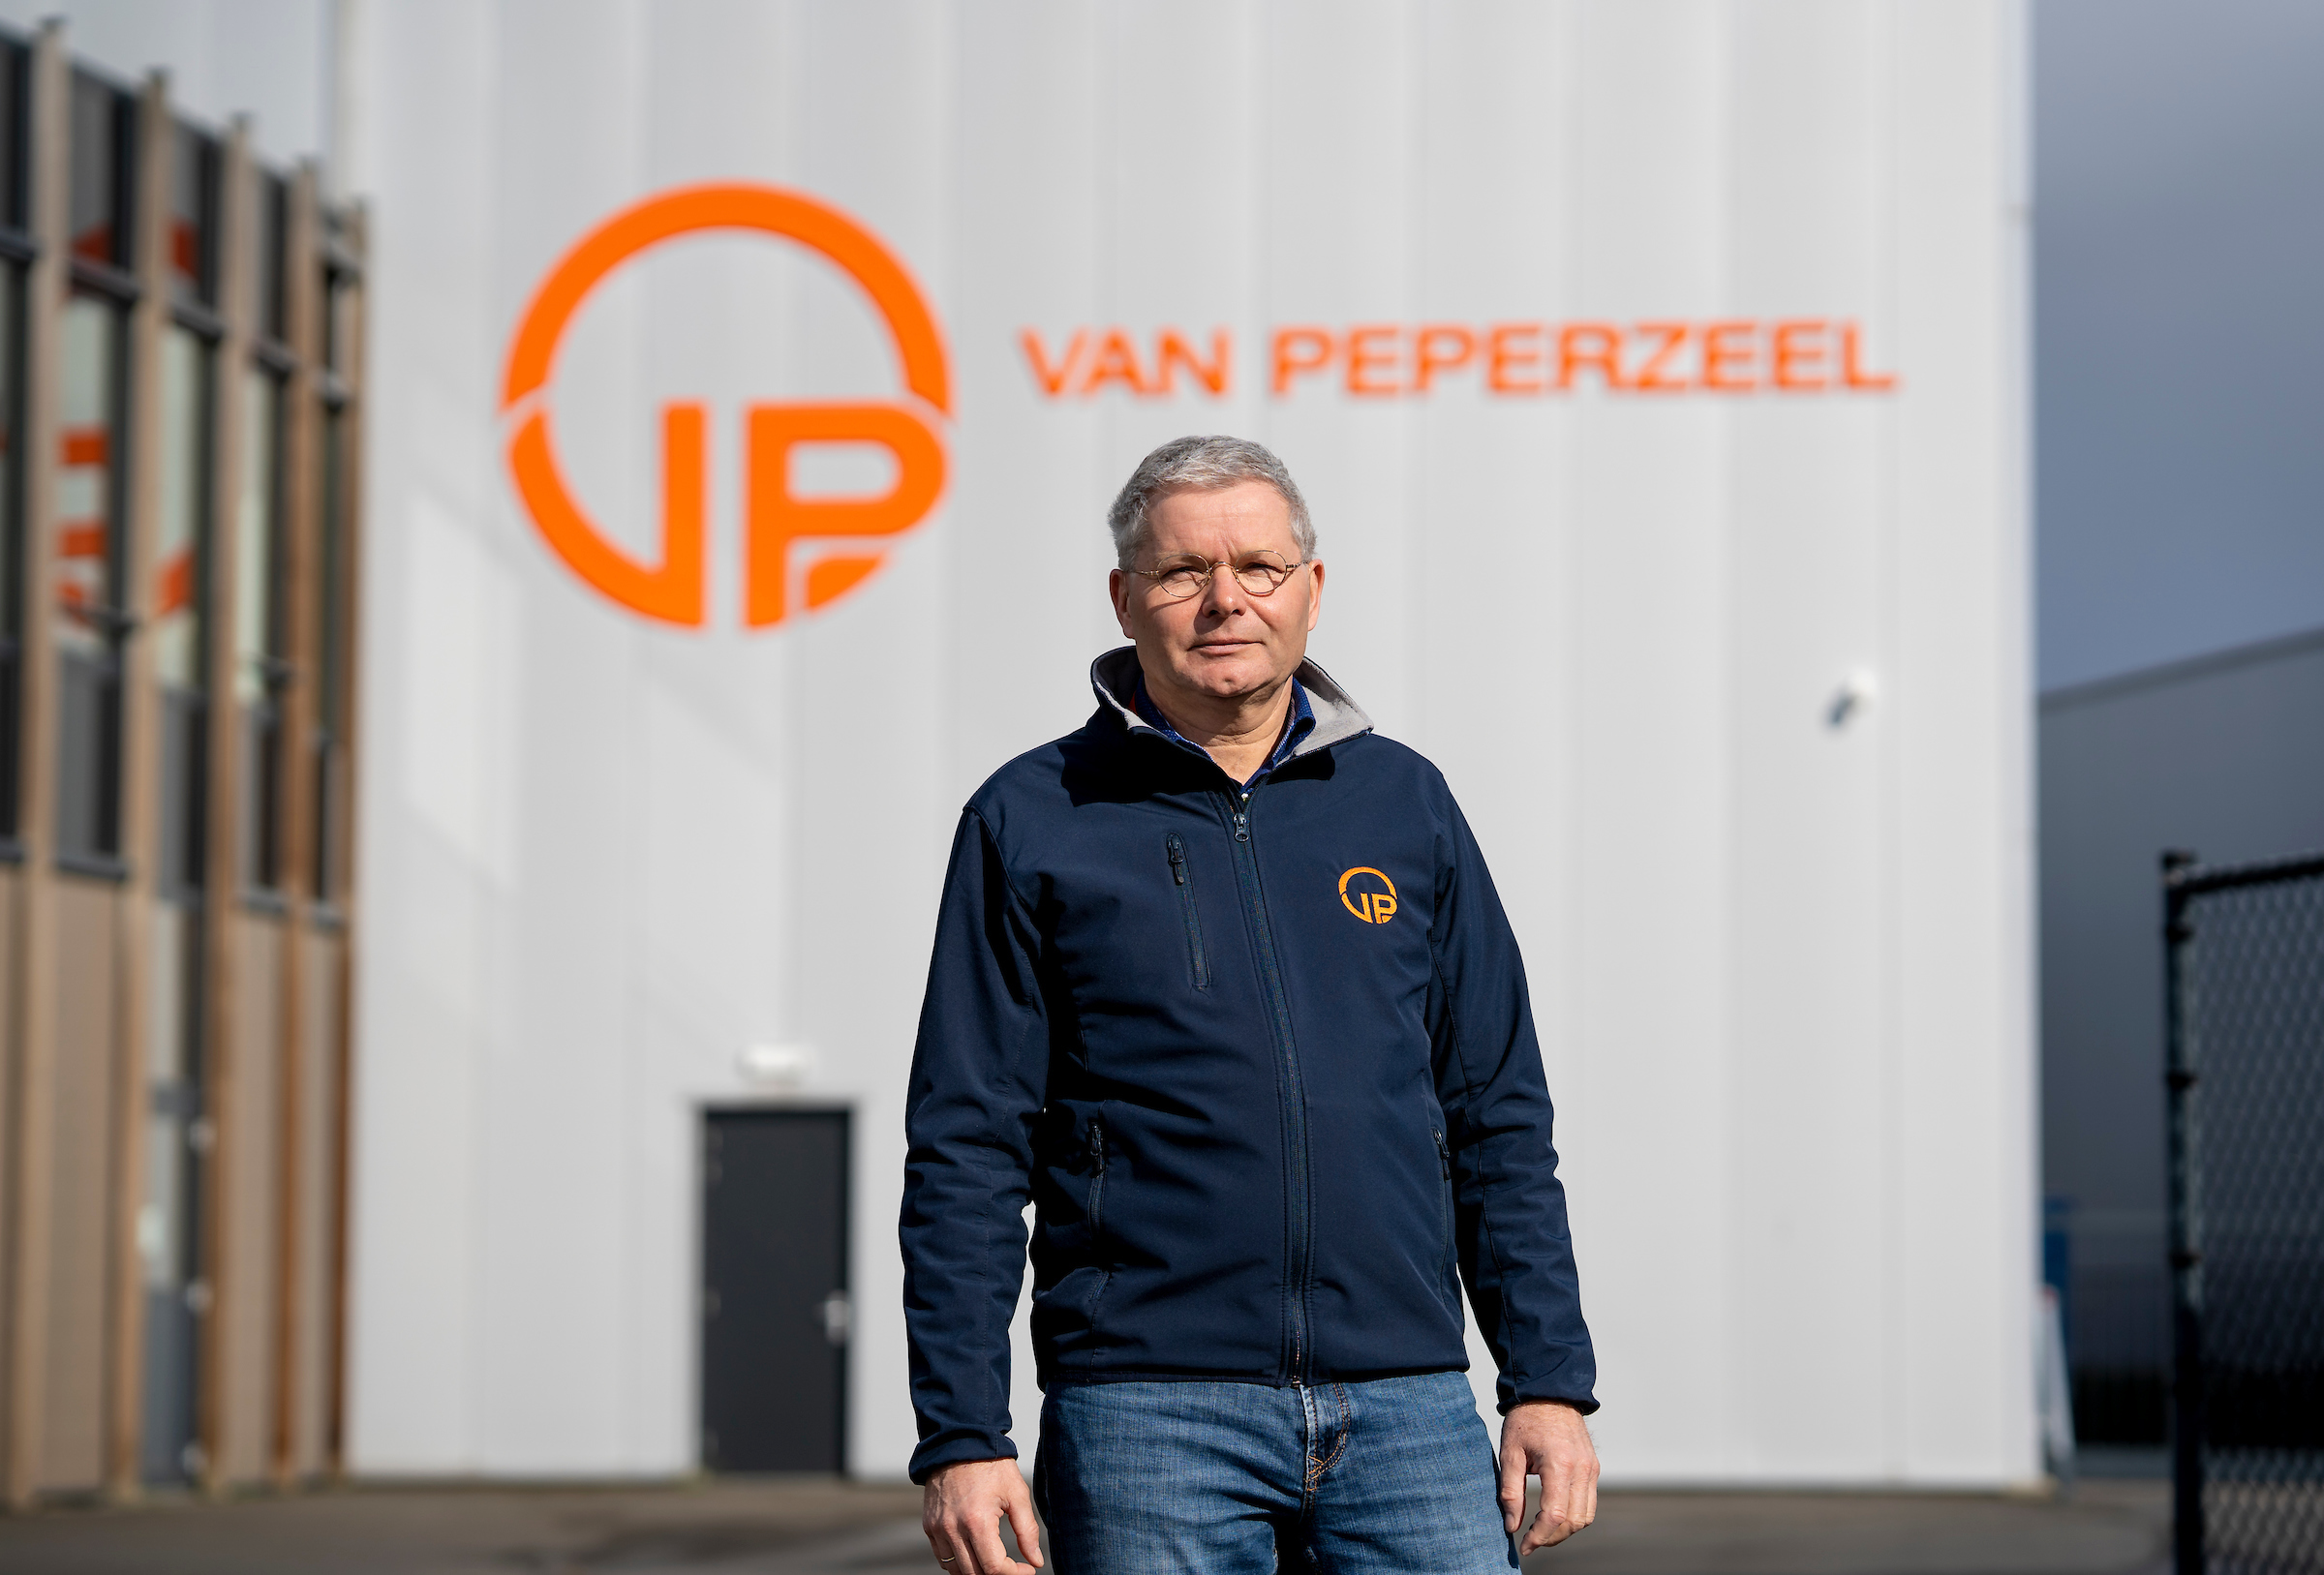 Johan van Peperzeel, Van Peperzeel is de inzamelaar van oude accu's in Nederland en België